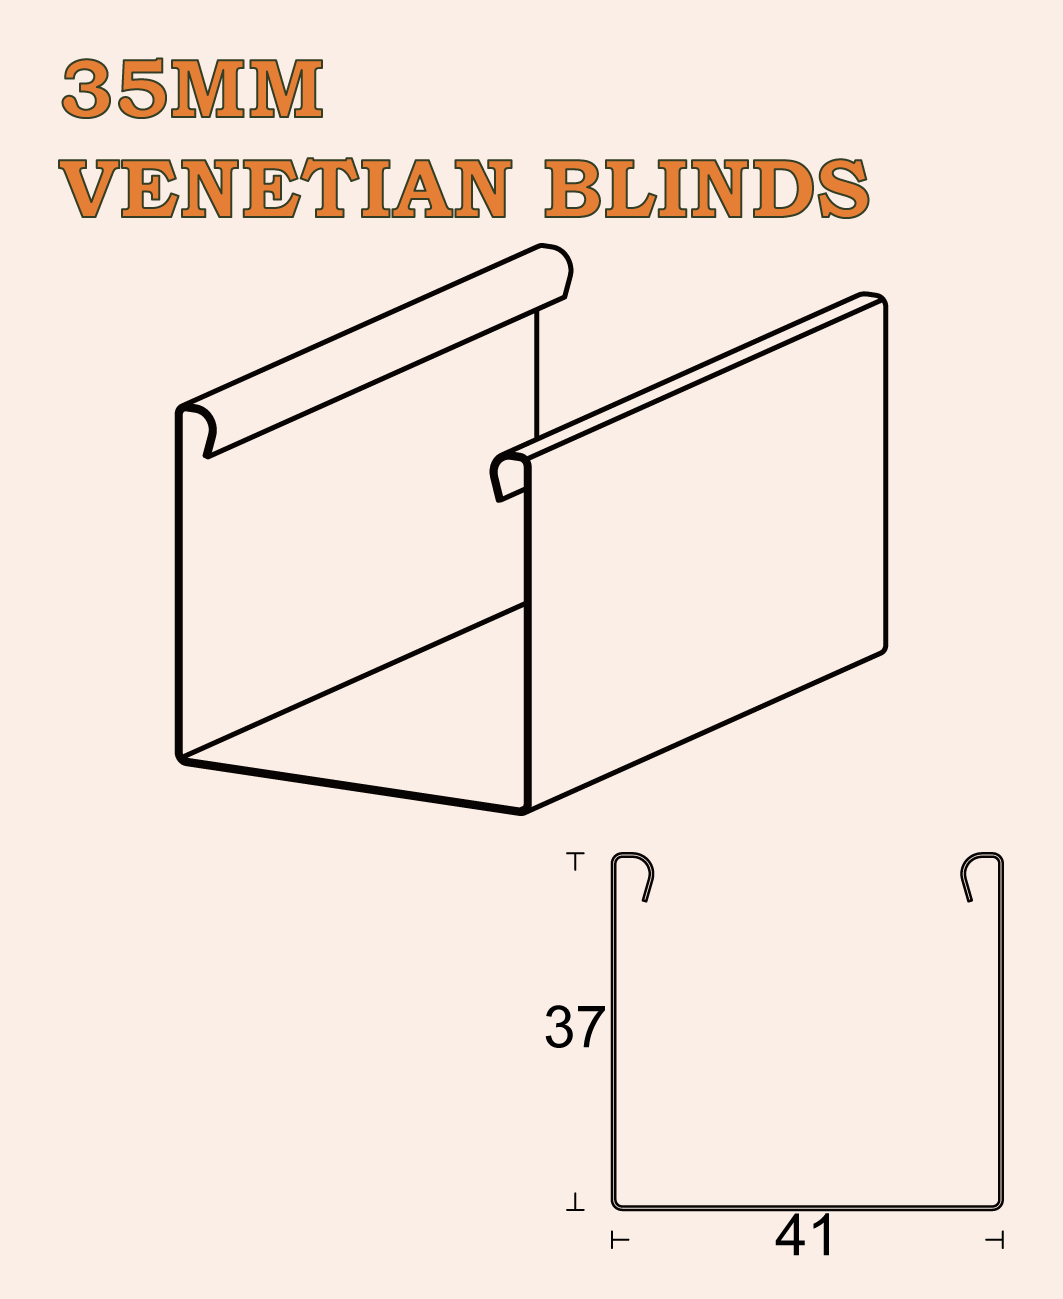 35MM VENETIAN BLINDS